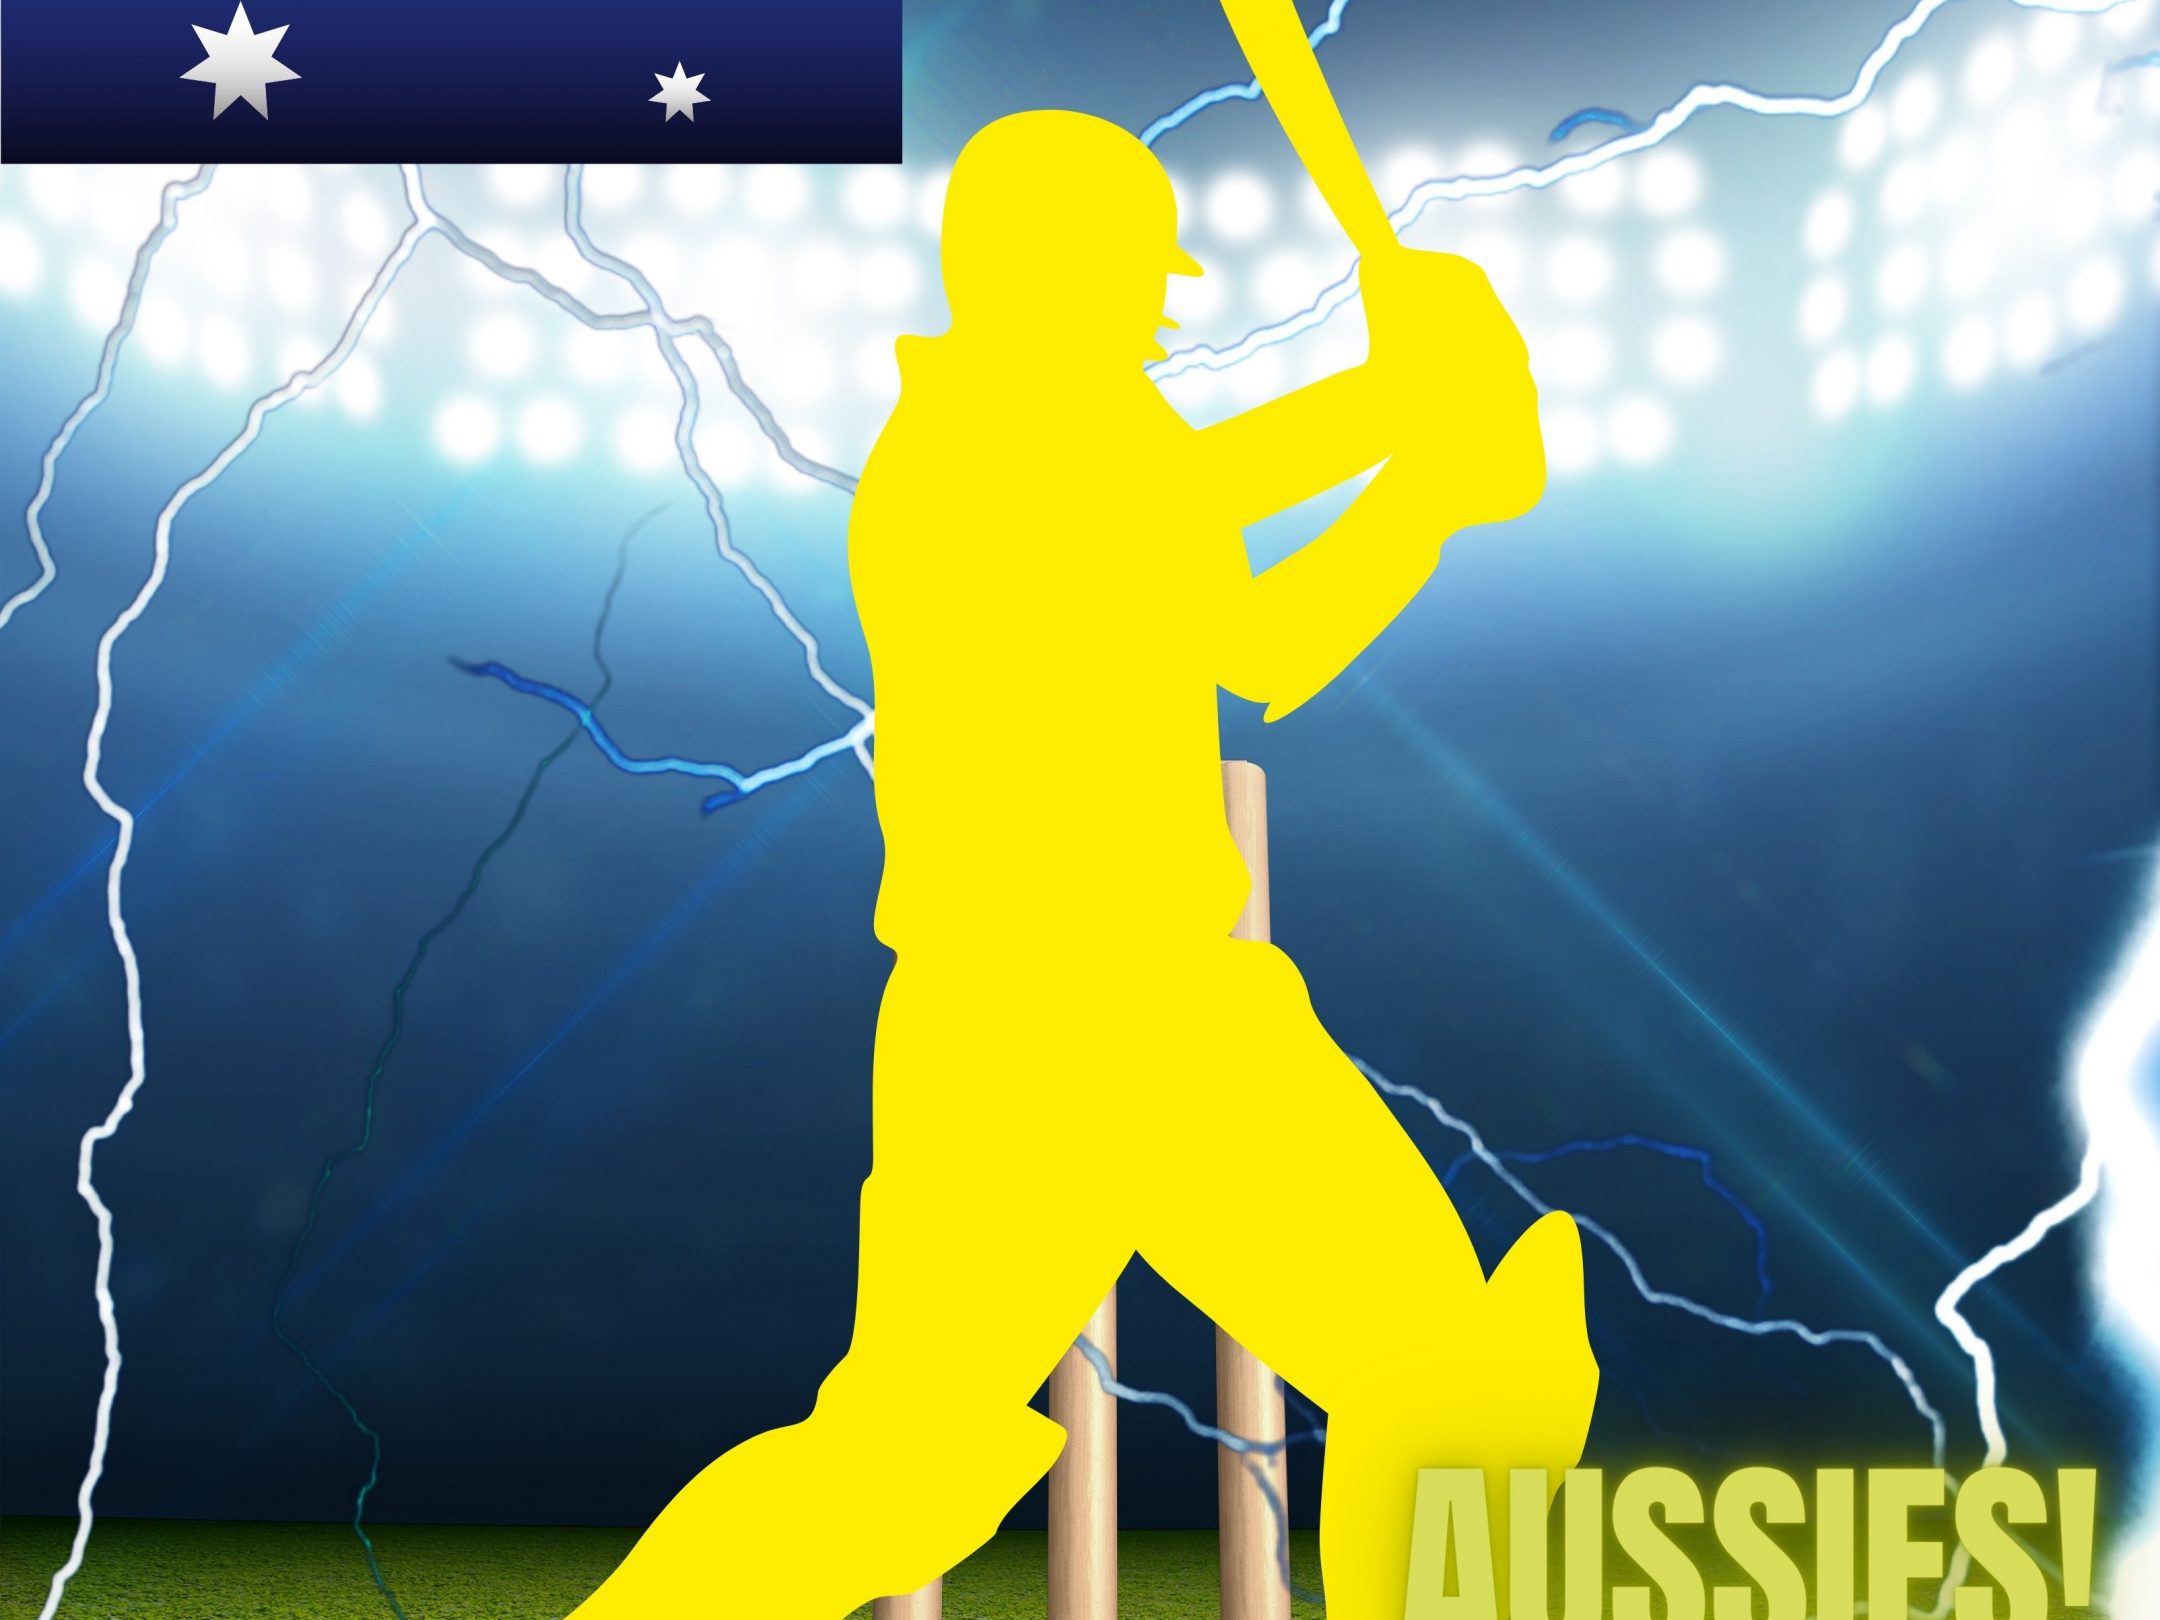 2160x1620 iPad wallpaper 4k Australia Cricket Stadium iPad Wallpaper 2160x1620 pixels resolution